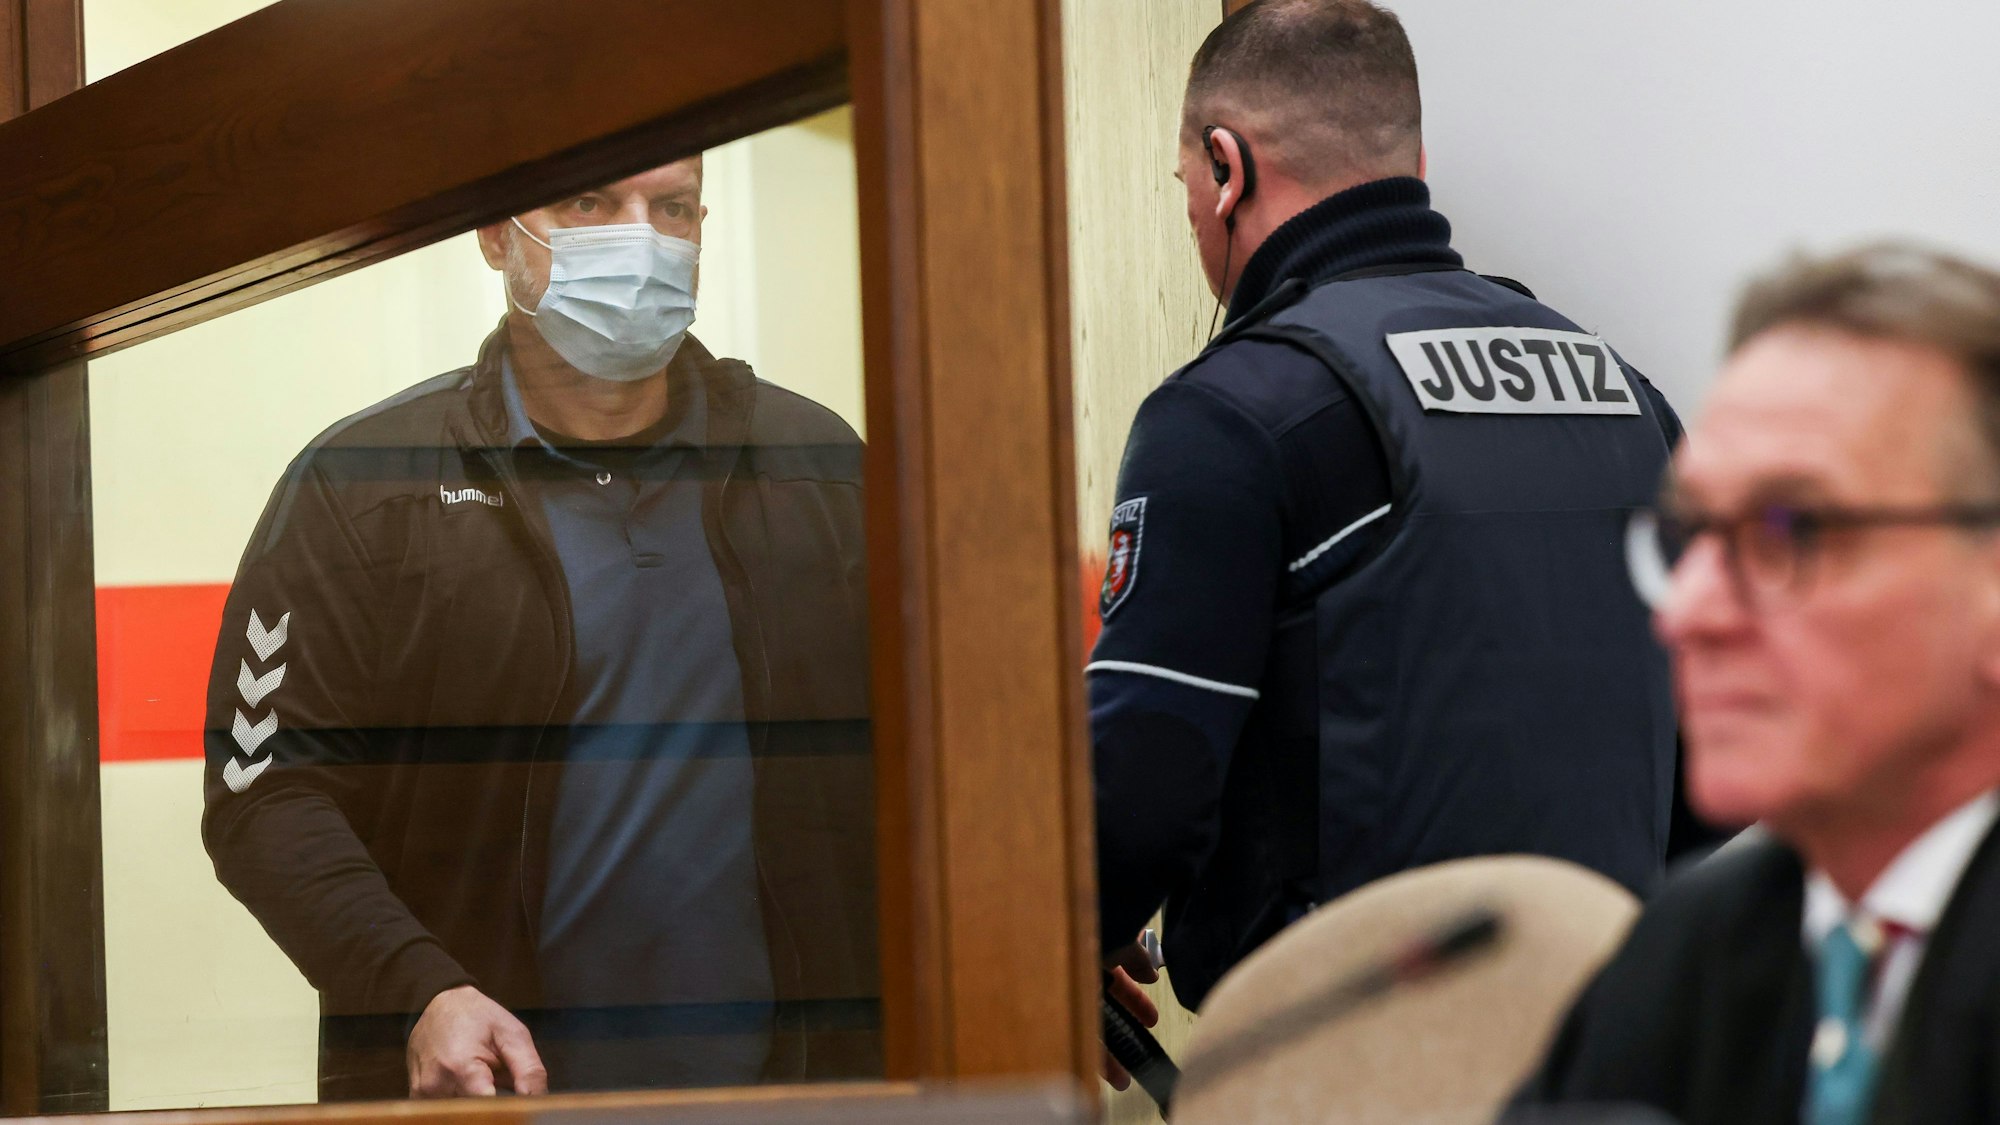 04.01.2024, Köln: Prozess gegen Thomas Drach am Landgericht Köln.
Ausstehend ist das letzte Wort.

Foto: Michael Bause